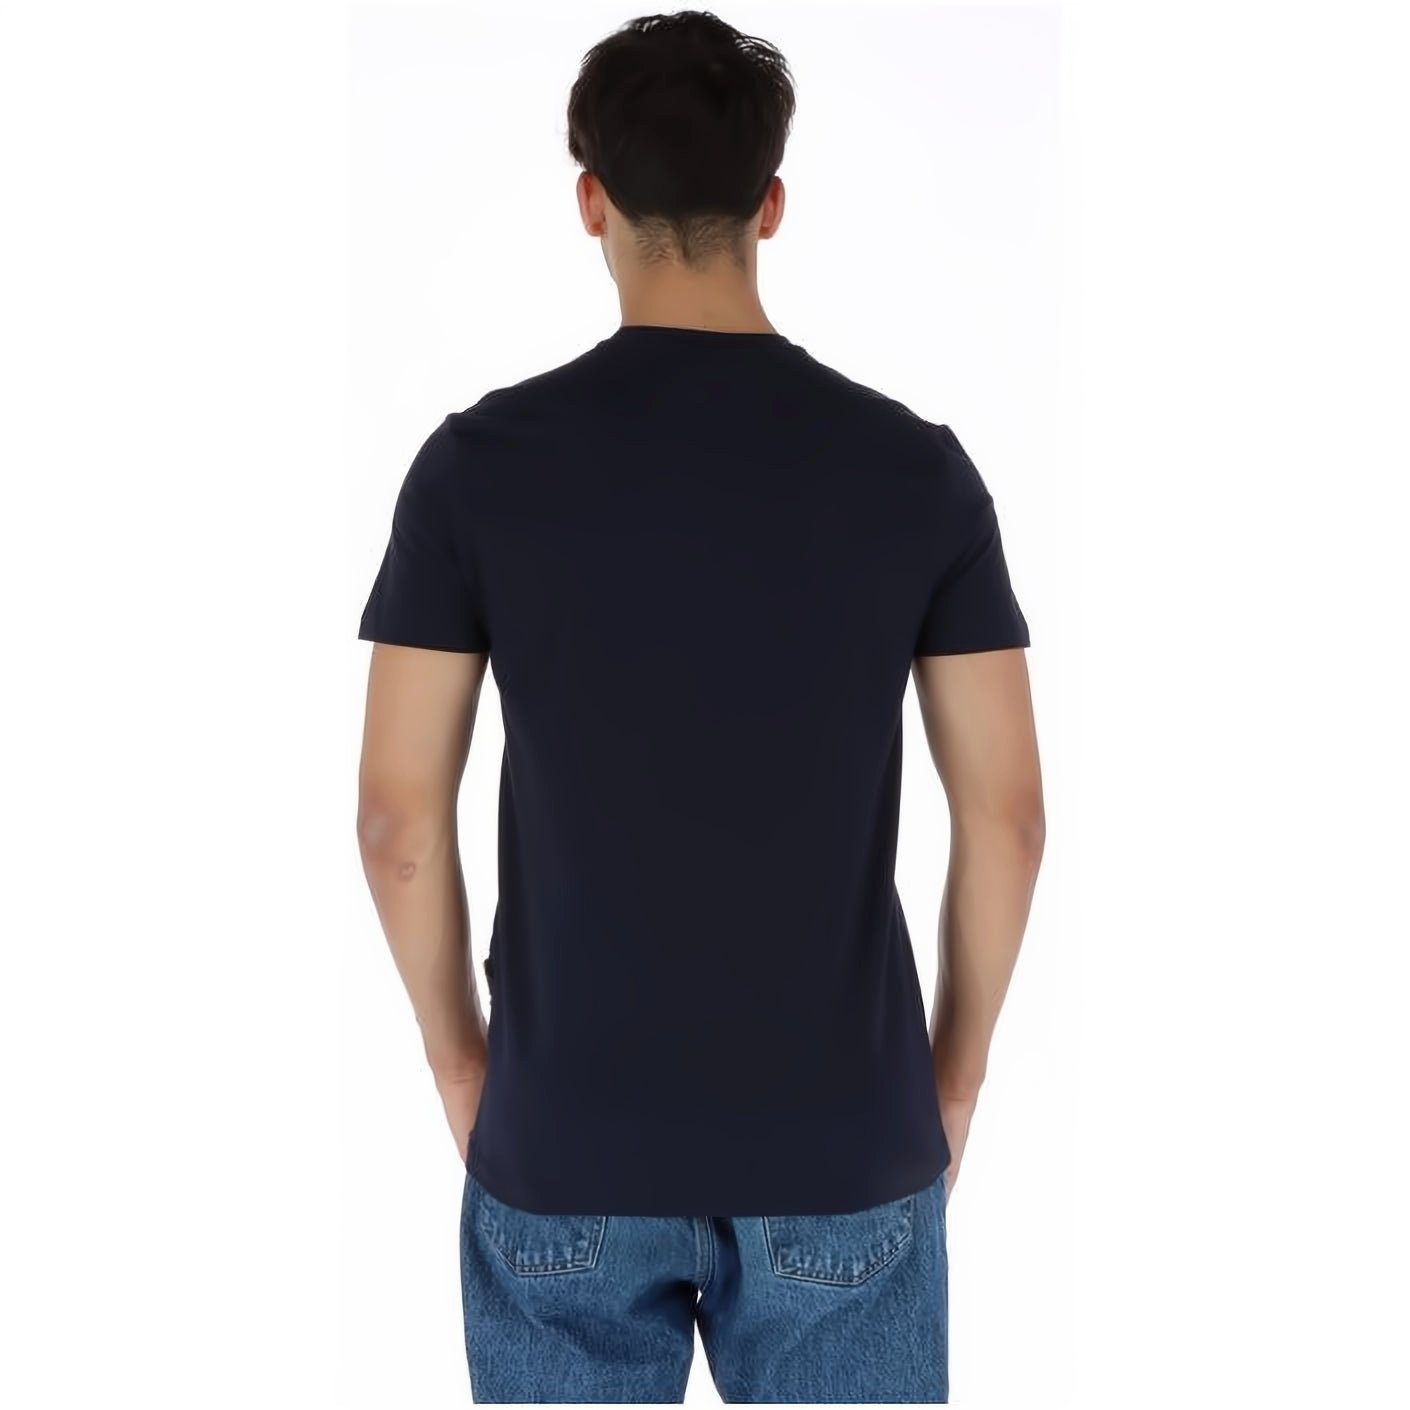 PLEIN SPORT T-Shirt ROUND NECK Look, vielfältige Tragekomfort, Stylischer Farbauswahl hoher